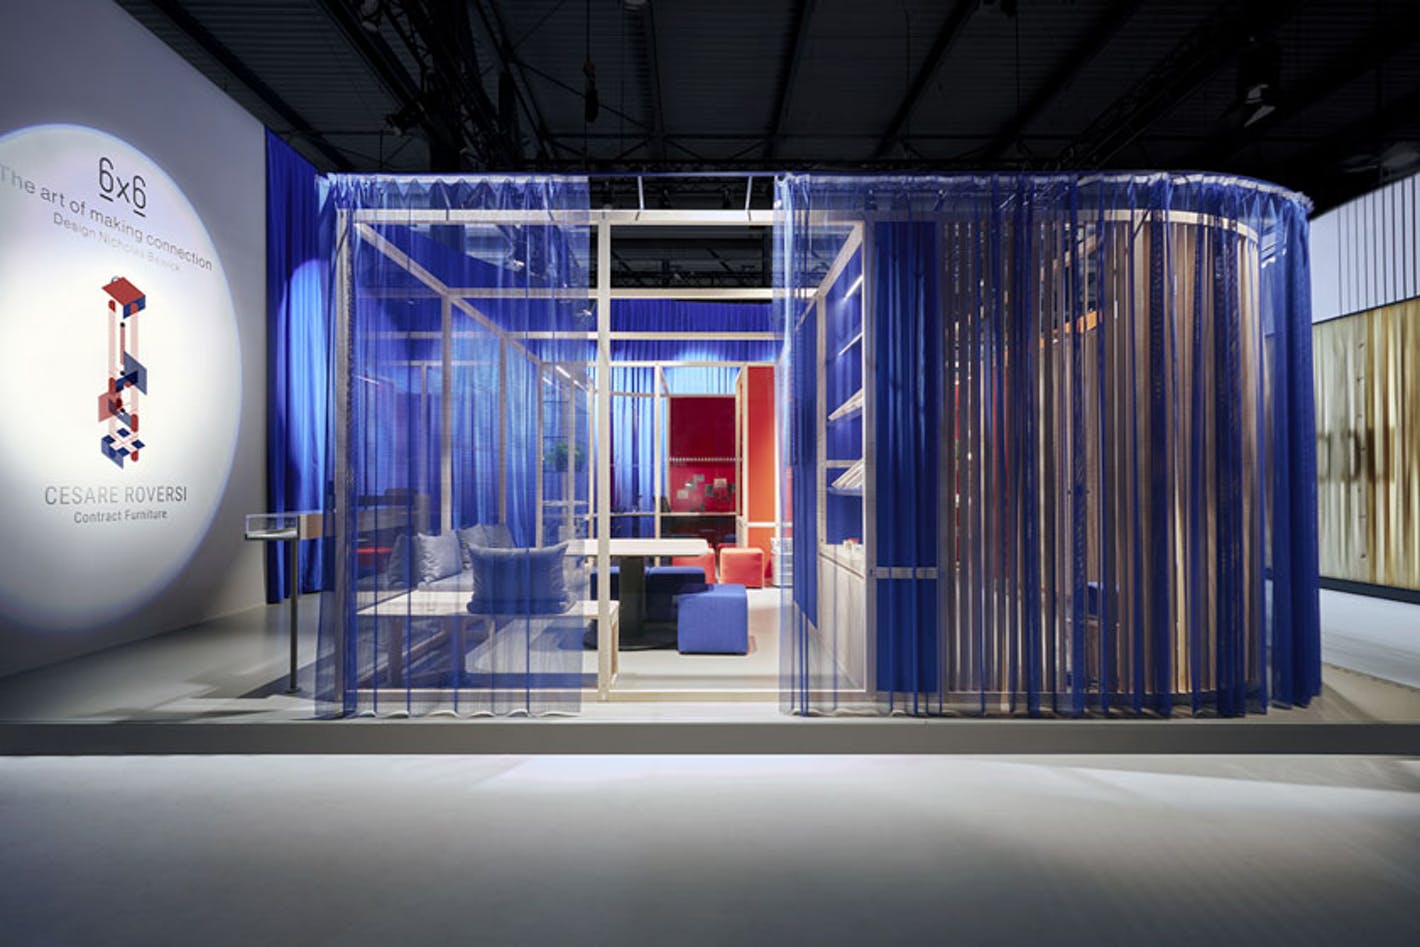 客厅画廊装置被半透明的蓝色织物包围